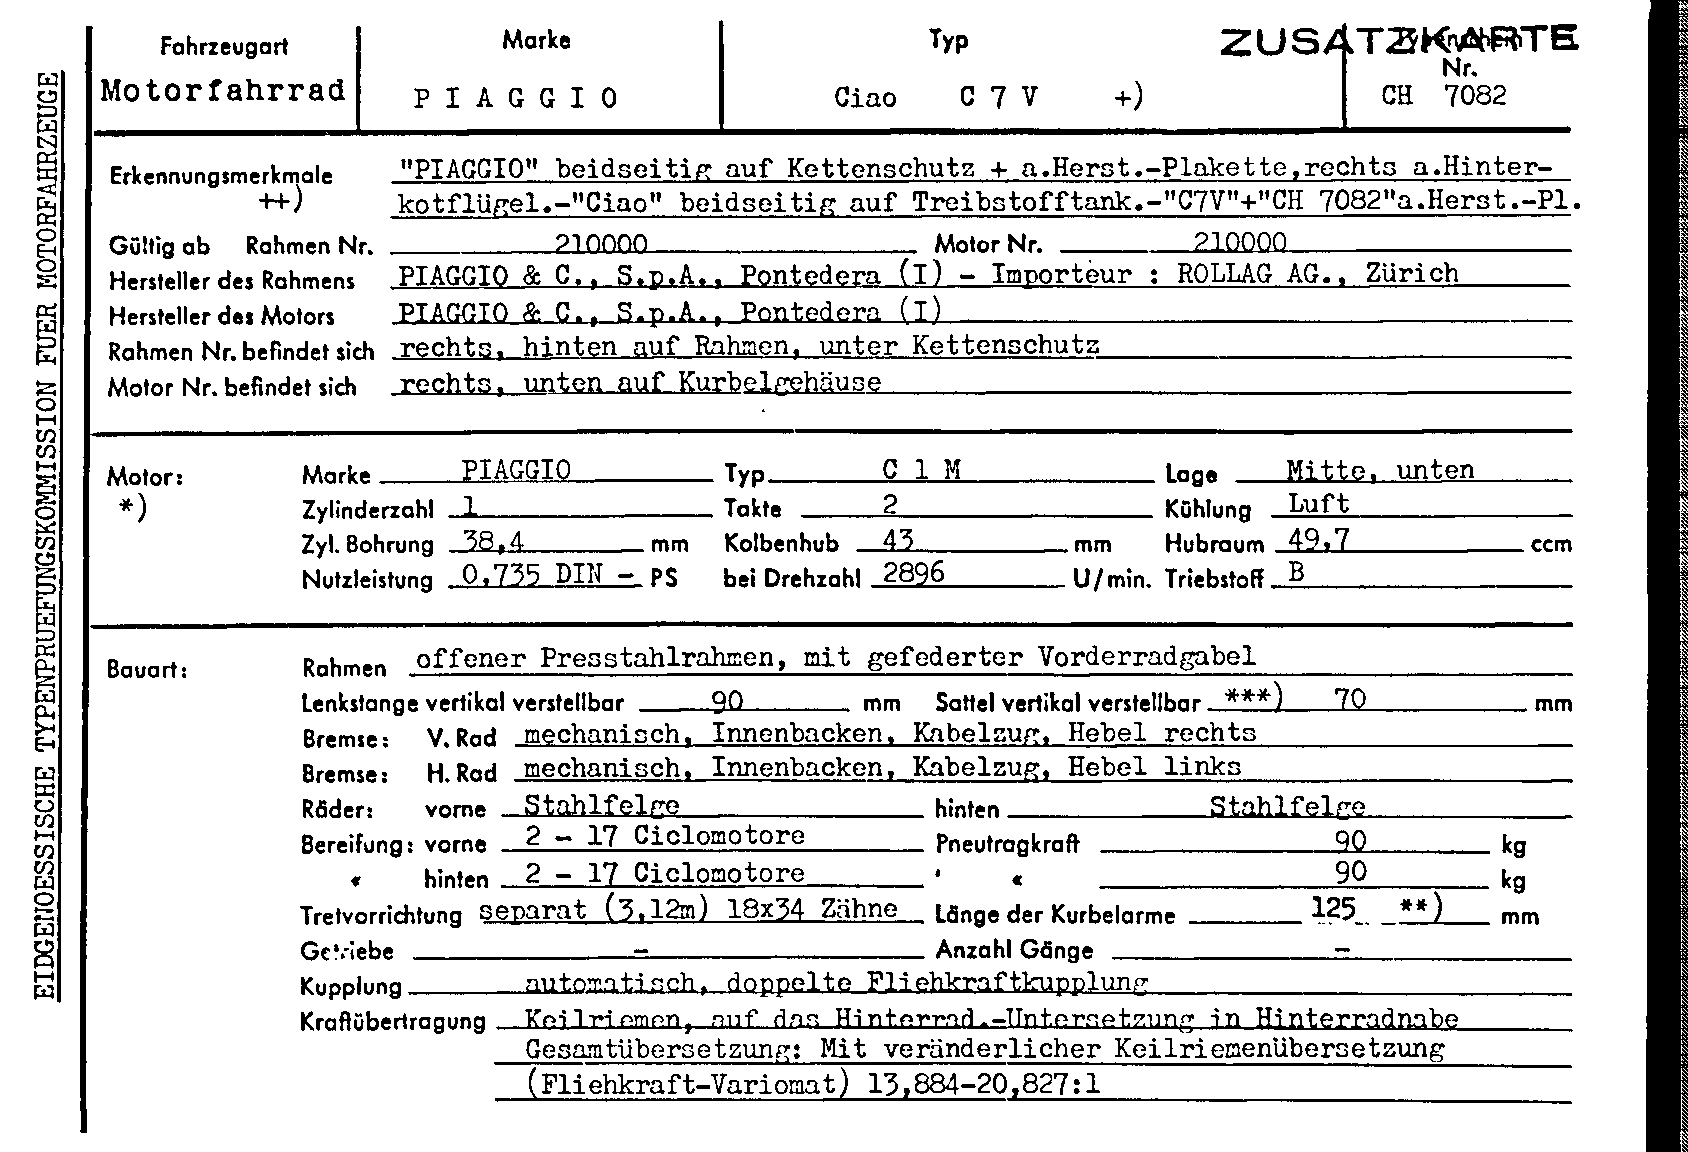 Swiss Certificate of Conformity 7082 German Page 1 (TG.DE.7082.1.png)